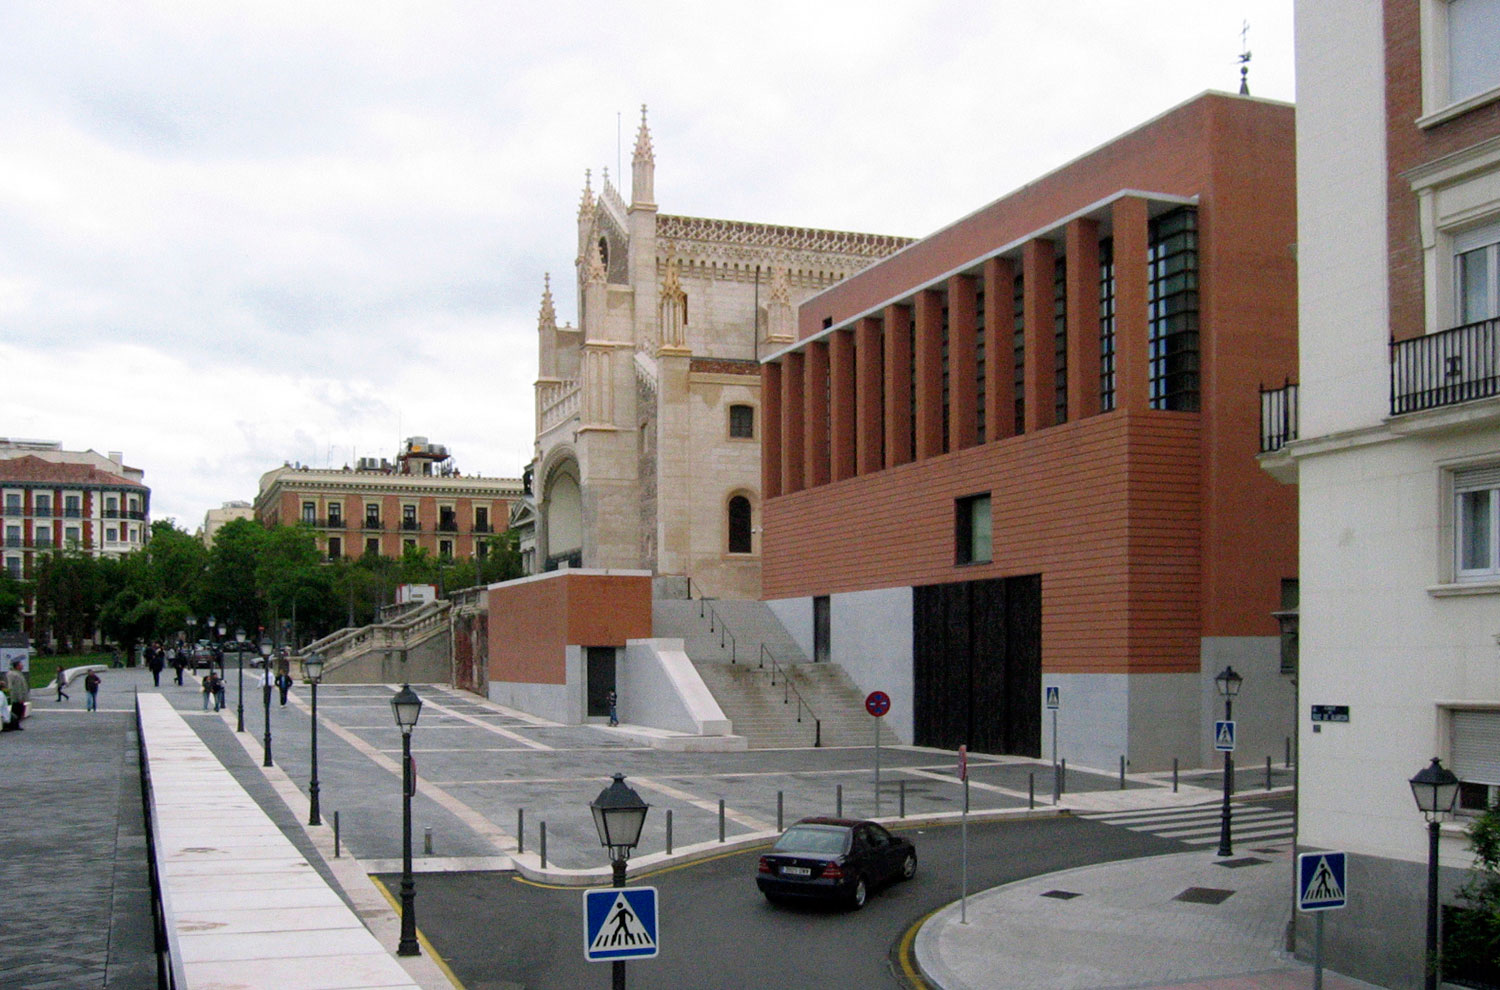 Prado Museum expansion